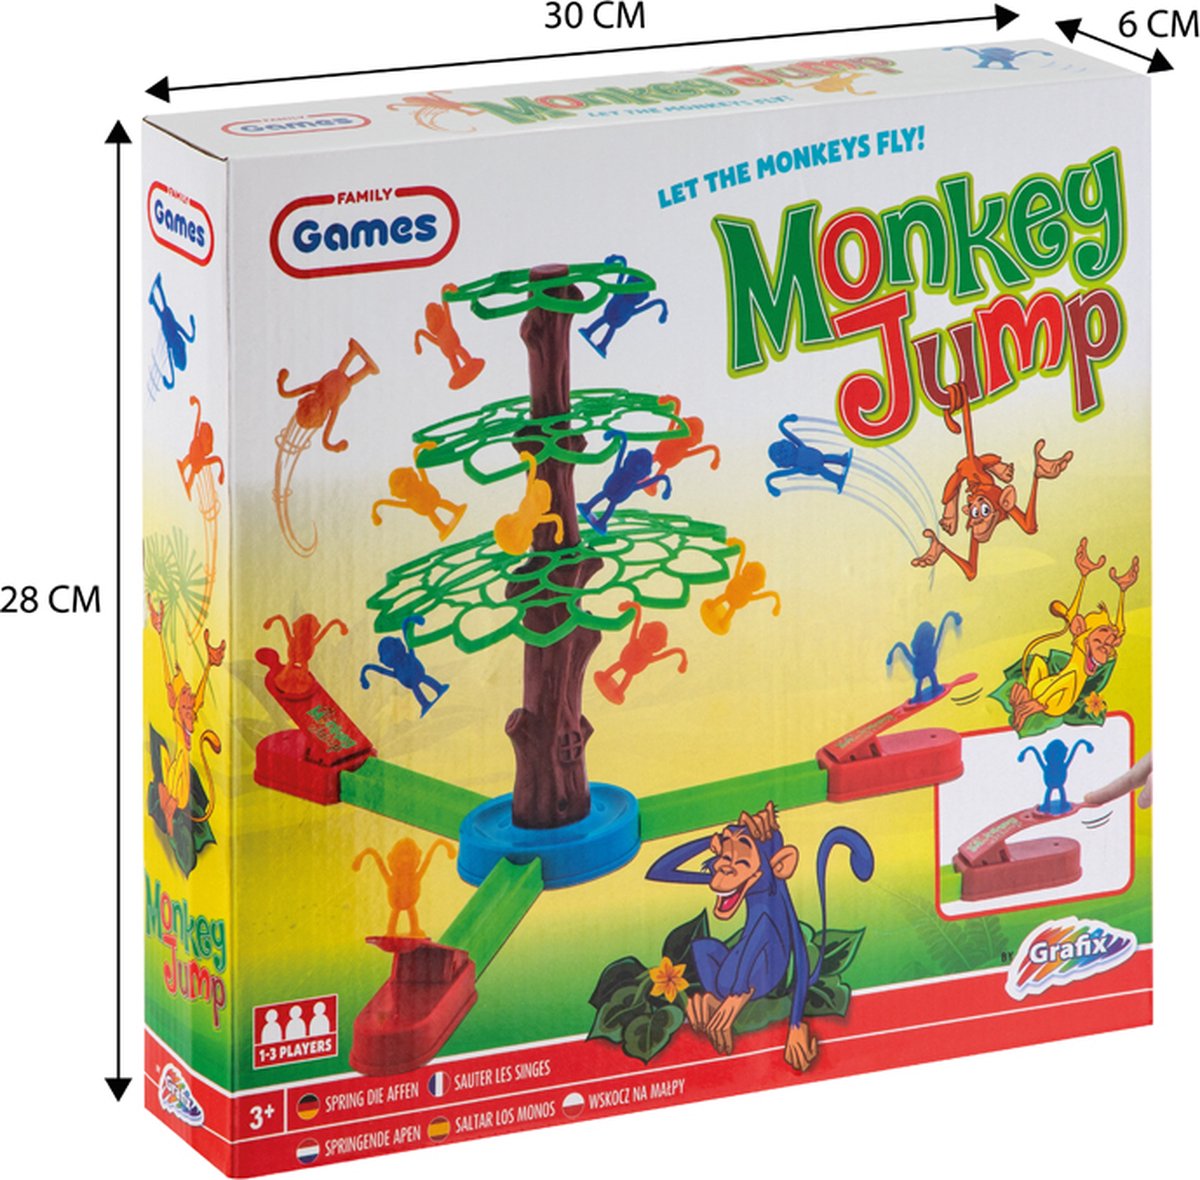 jusqu'à 40% 1 ou 2 jeux de sociétés Jumping monkeys